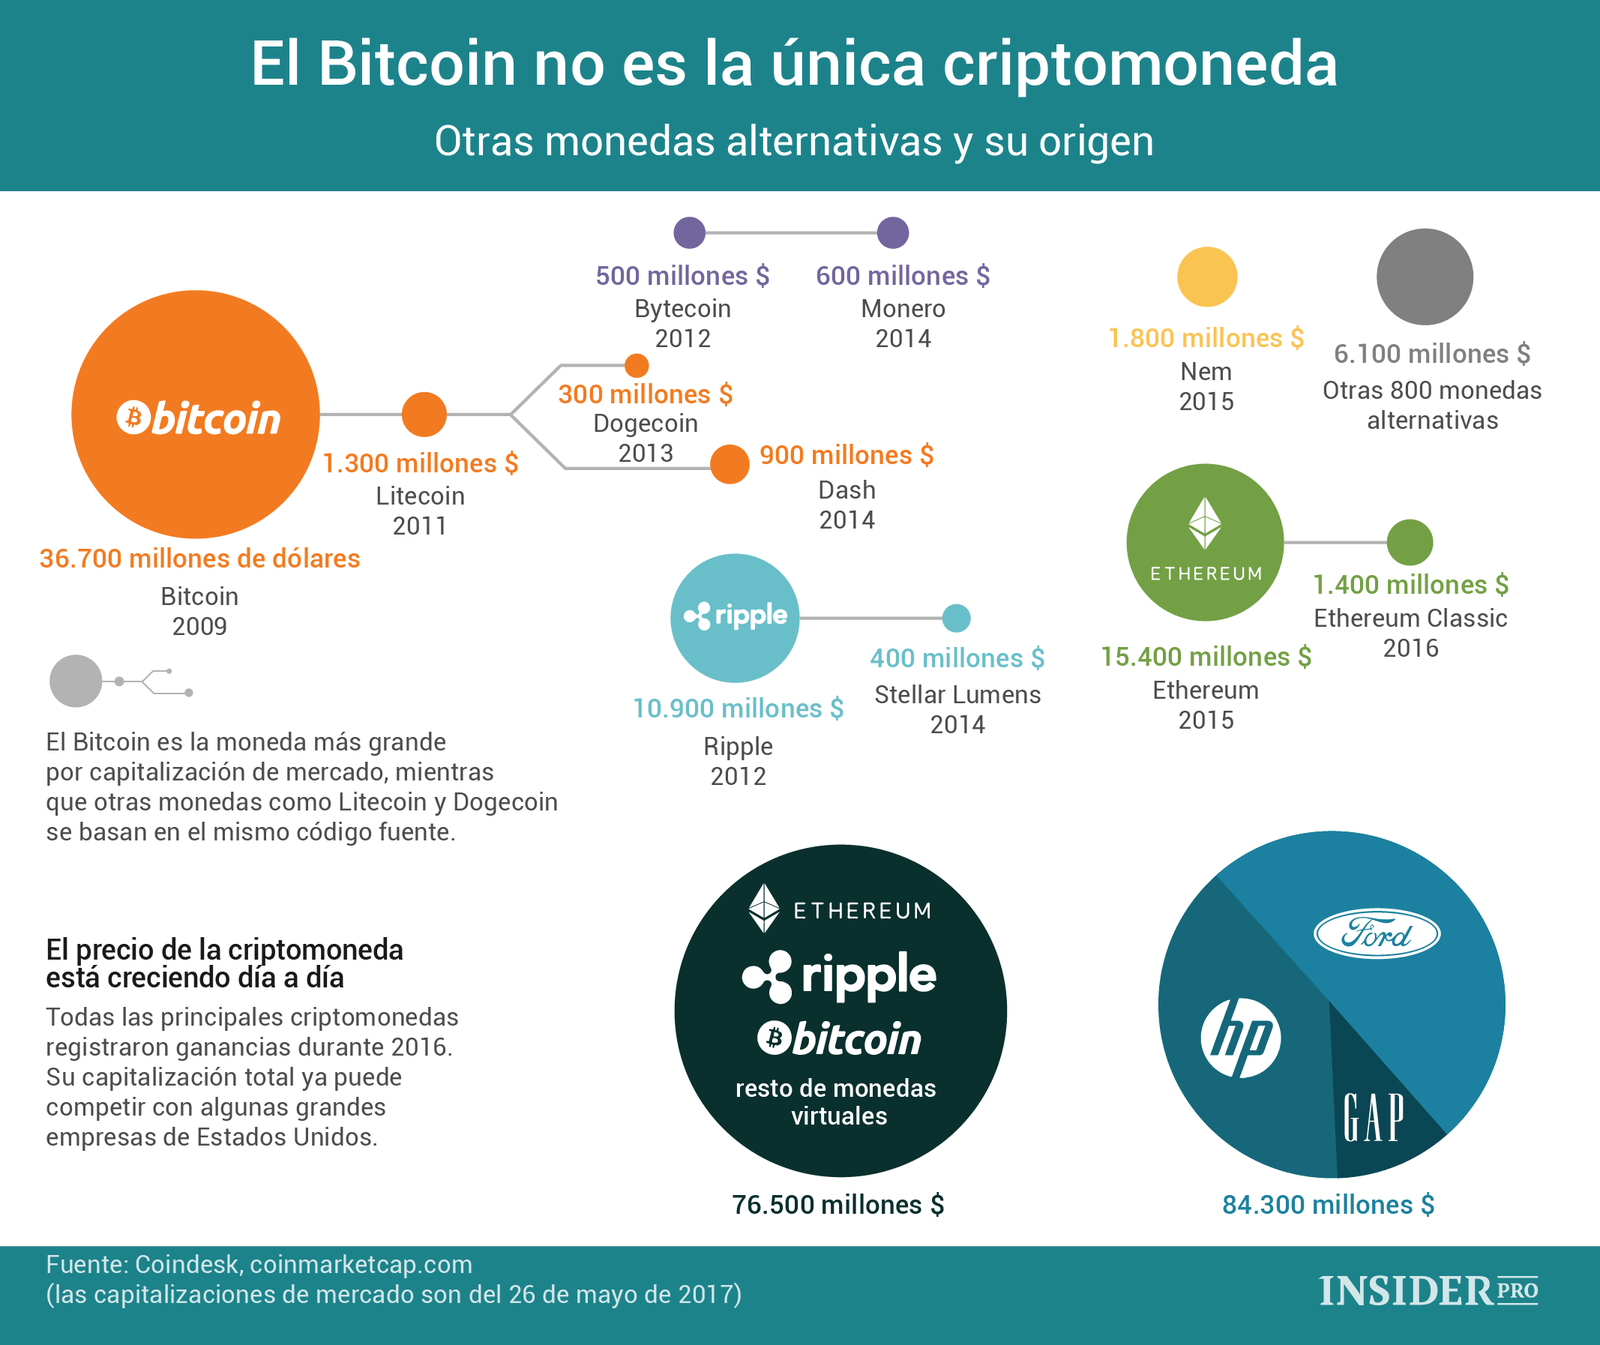 El Bitcoin no es la única criptomoneda